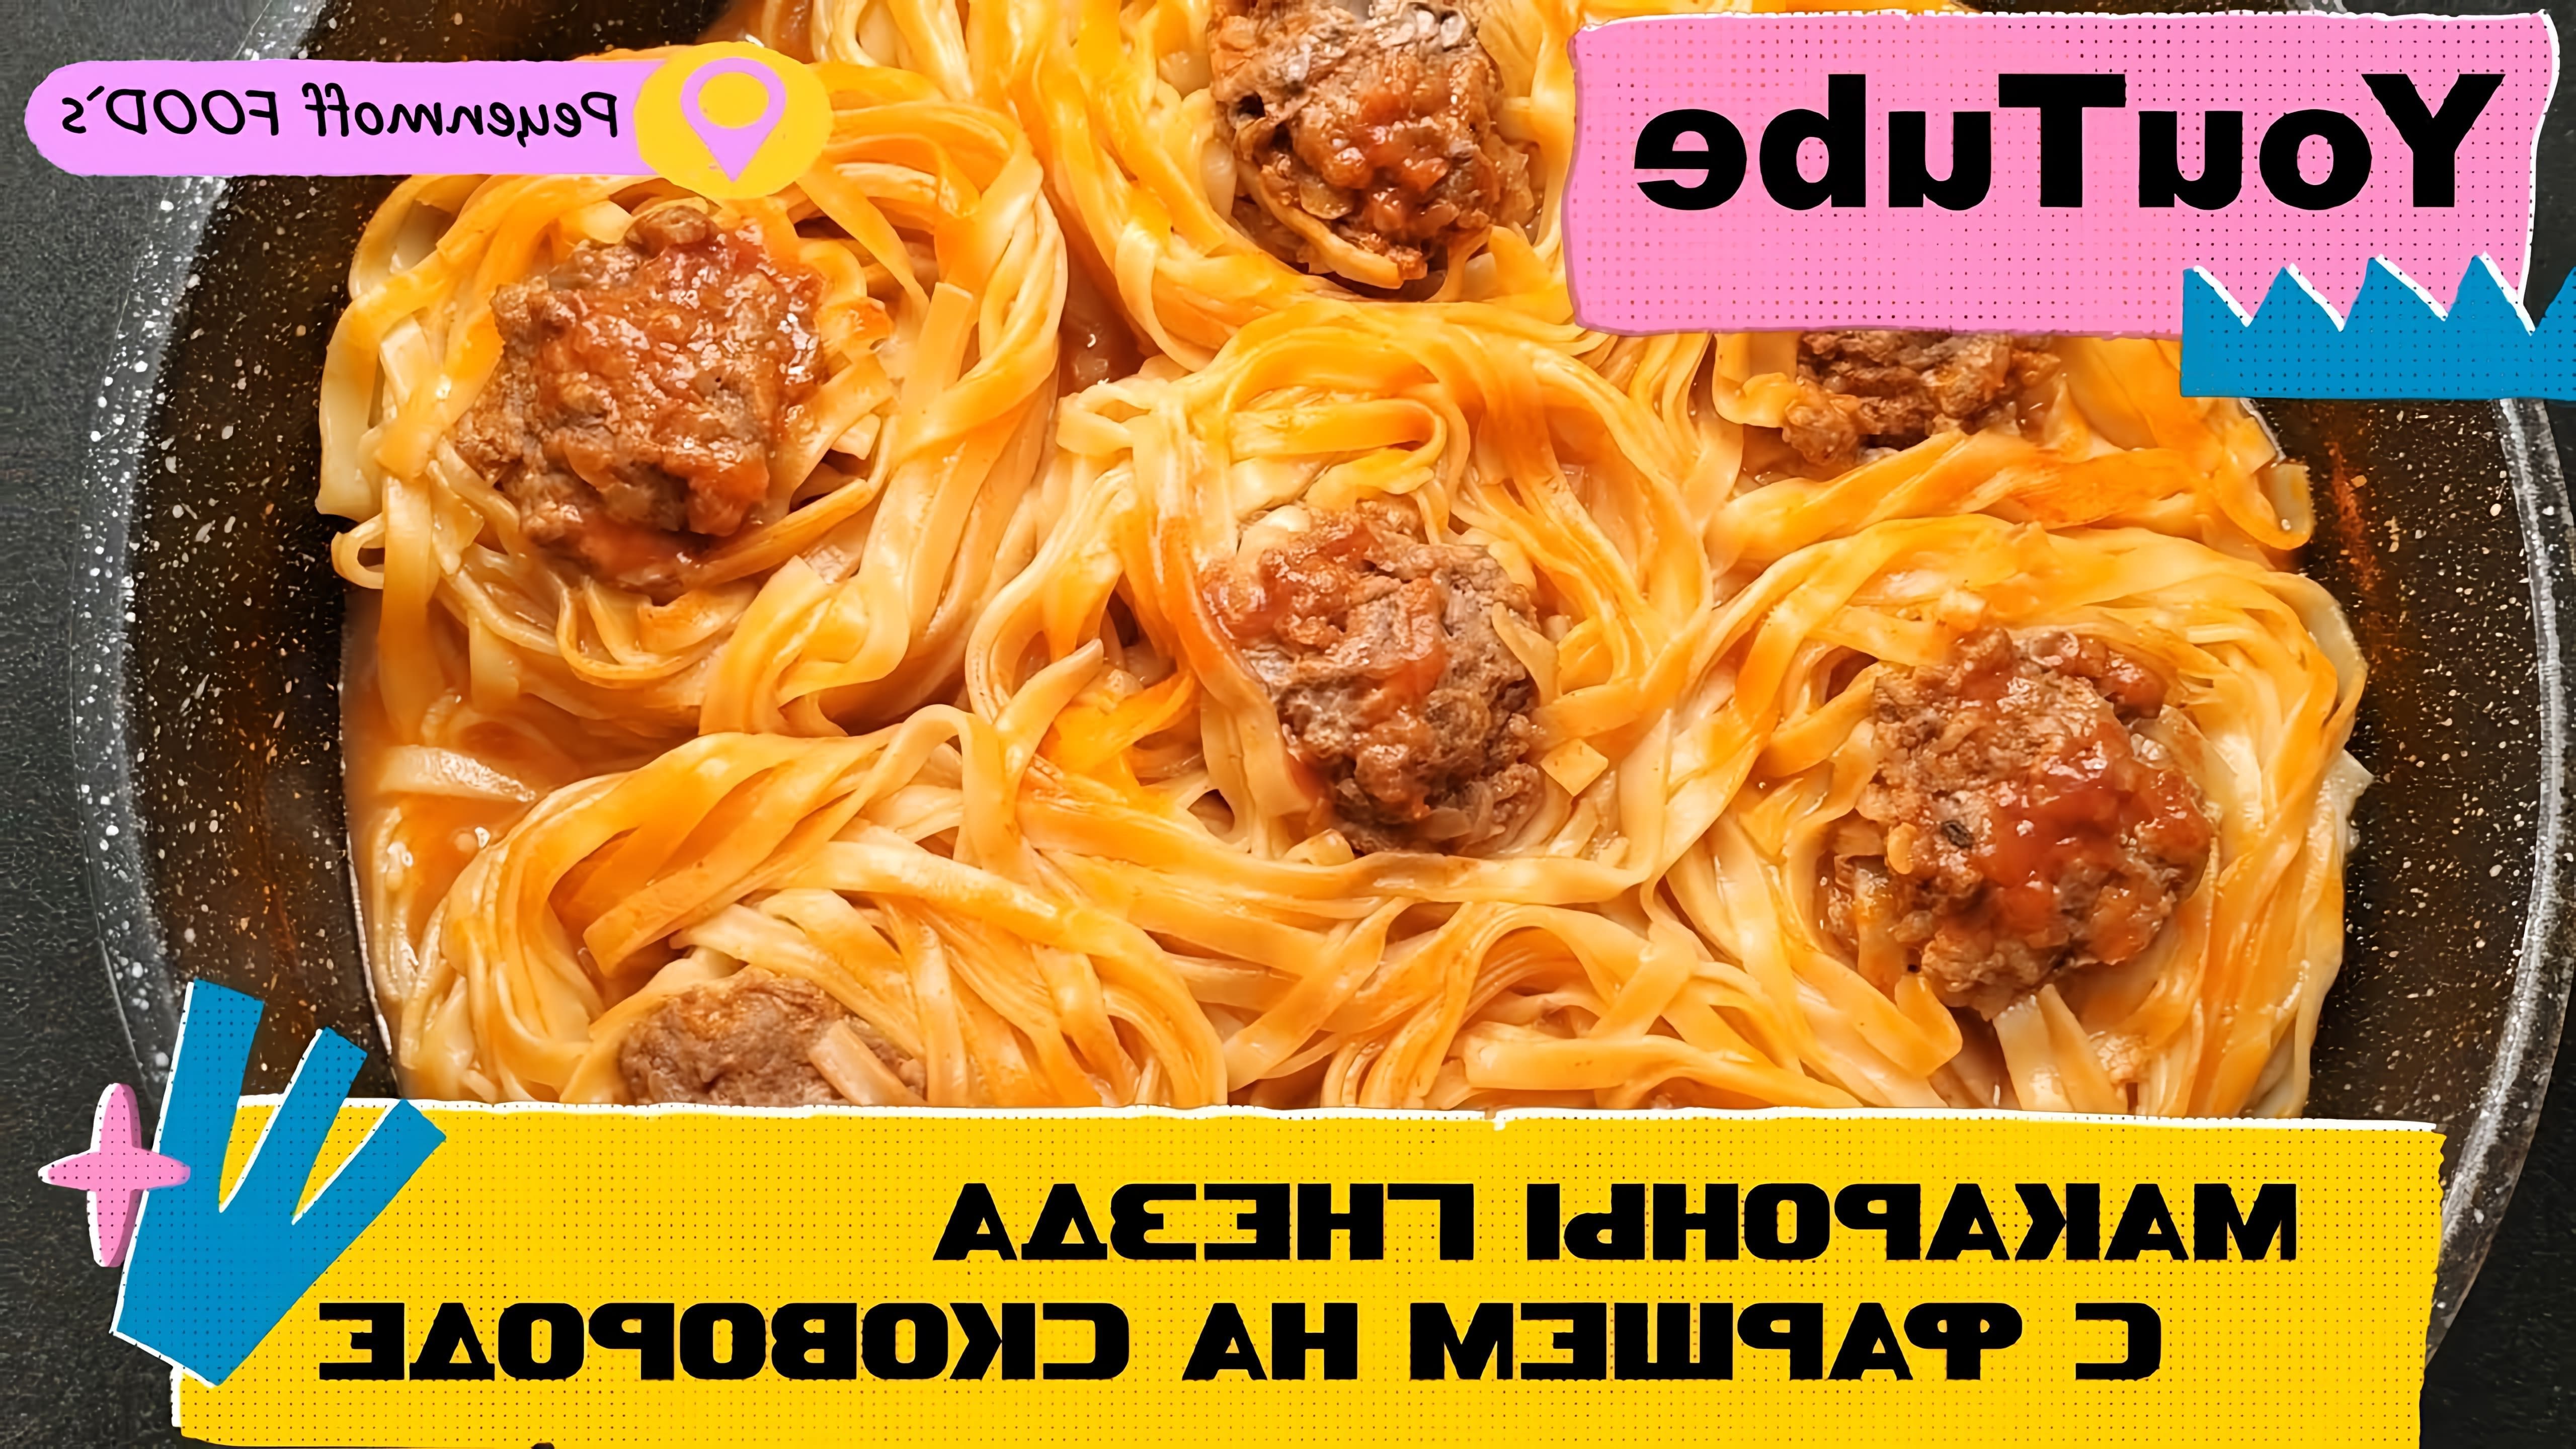 В этом видео-ролике вы увидите, как приготовить вкусный ужин за 20 минут - макароны гнезда с фаршем на сковороде